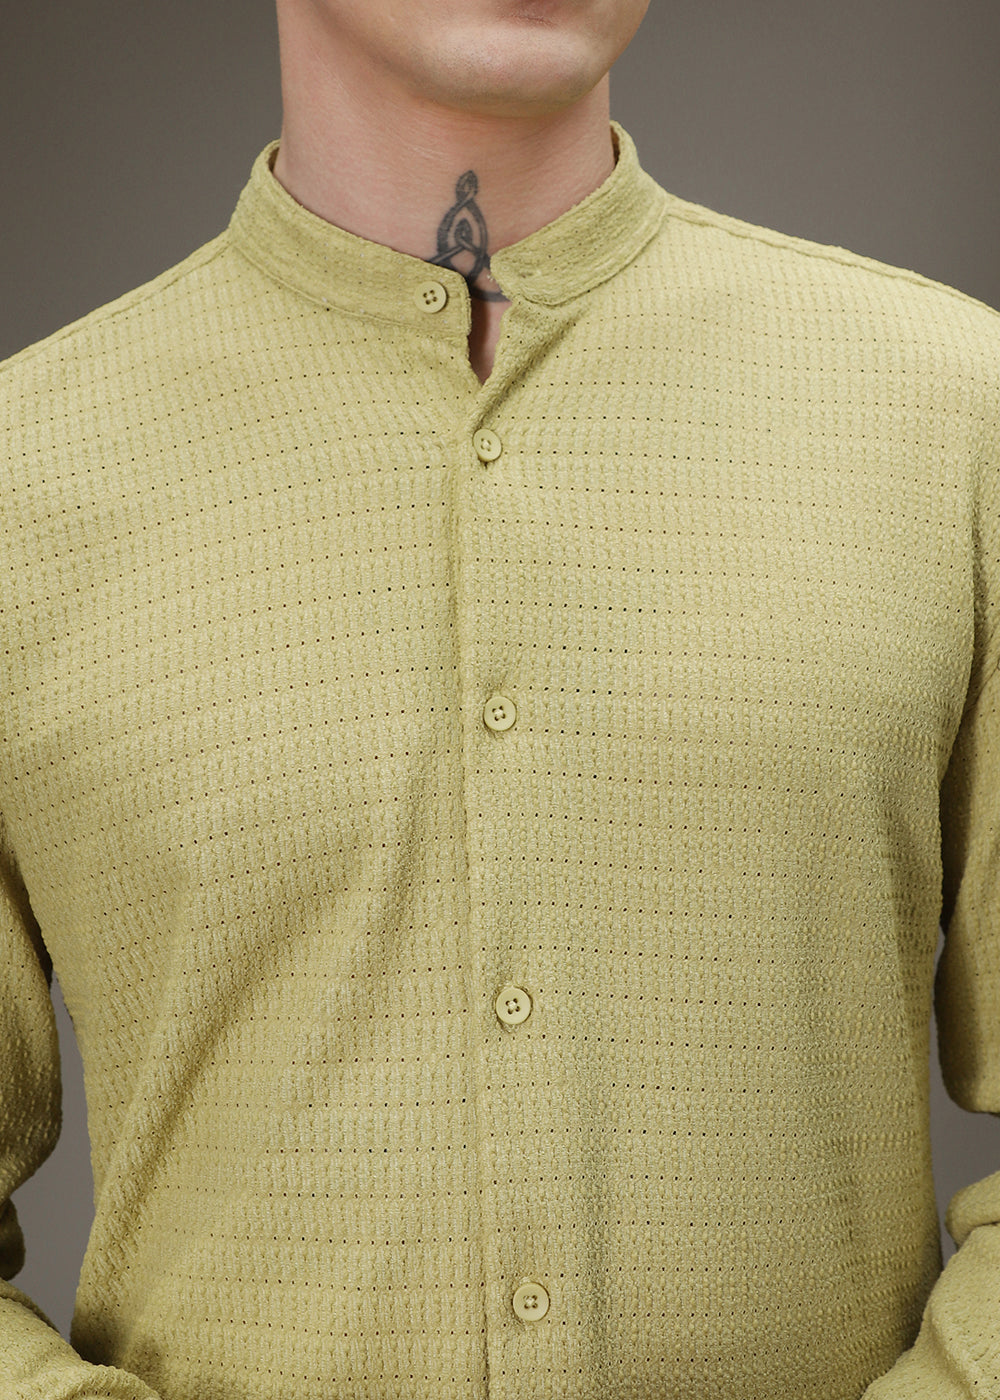 Pistachio Green Knitted Crochet Shirt